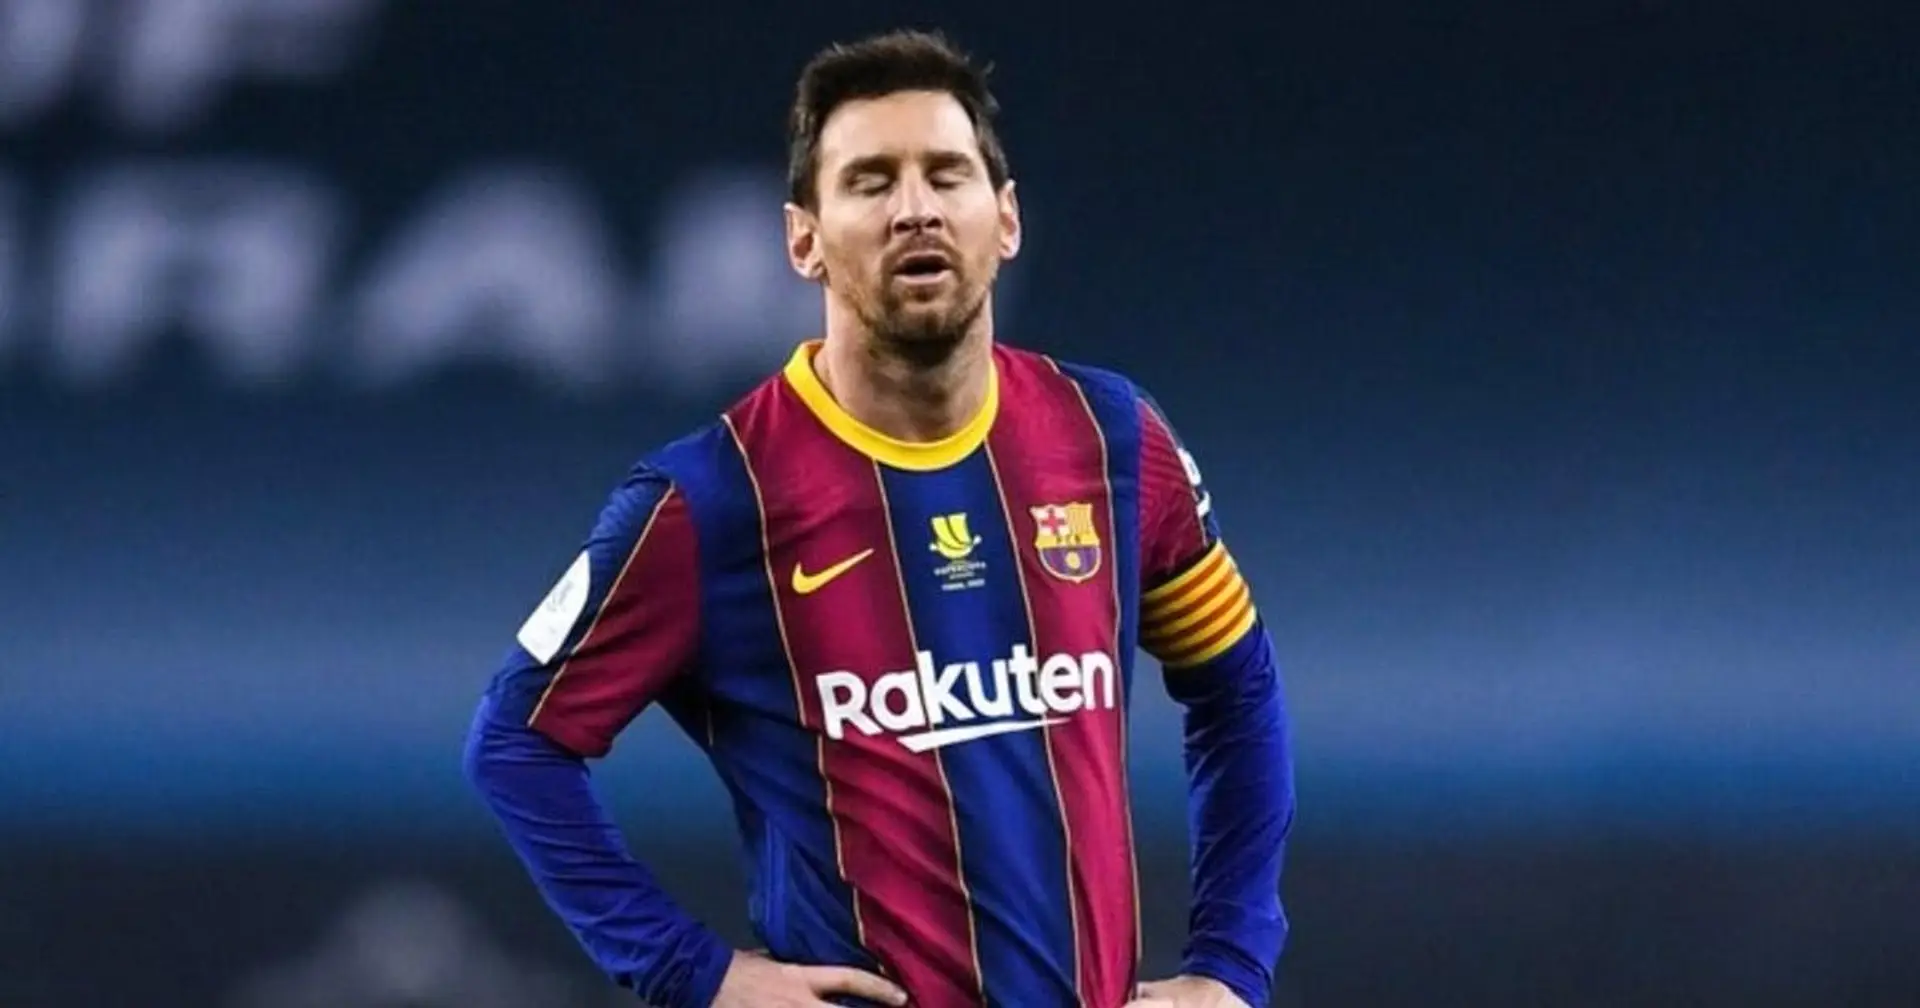 Barcelone aurait préparé 3 arguments dans son appel pour réduire la sanction de Messi